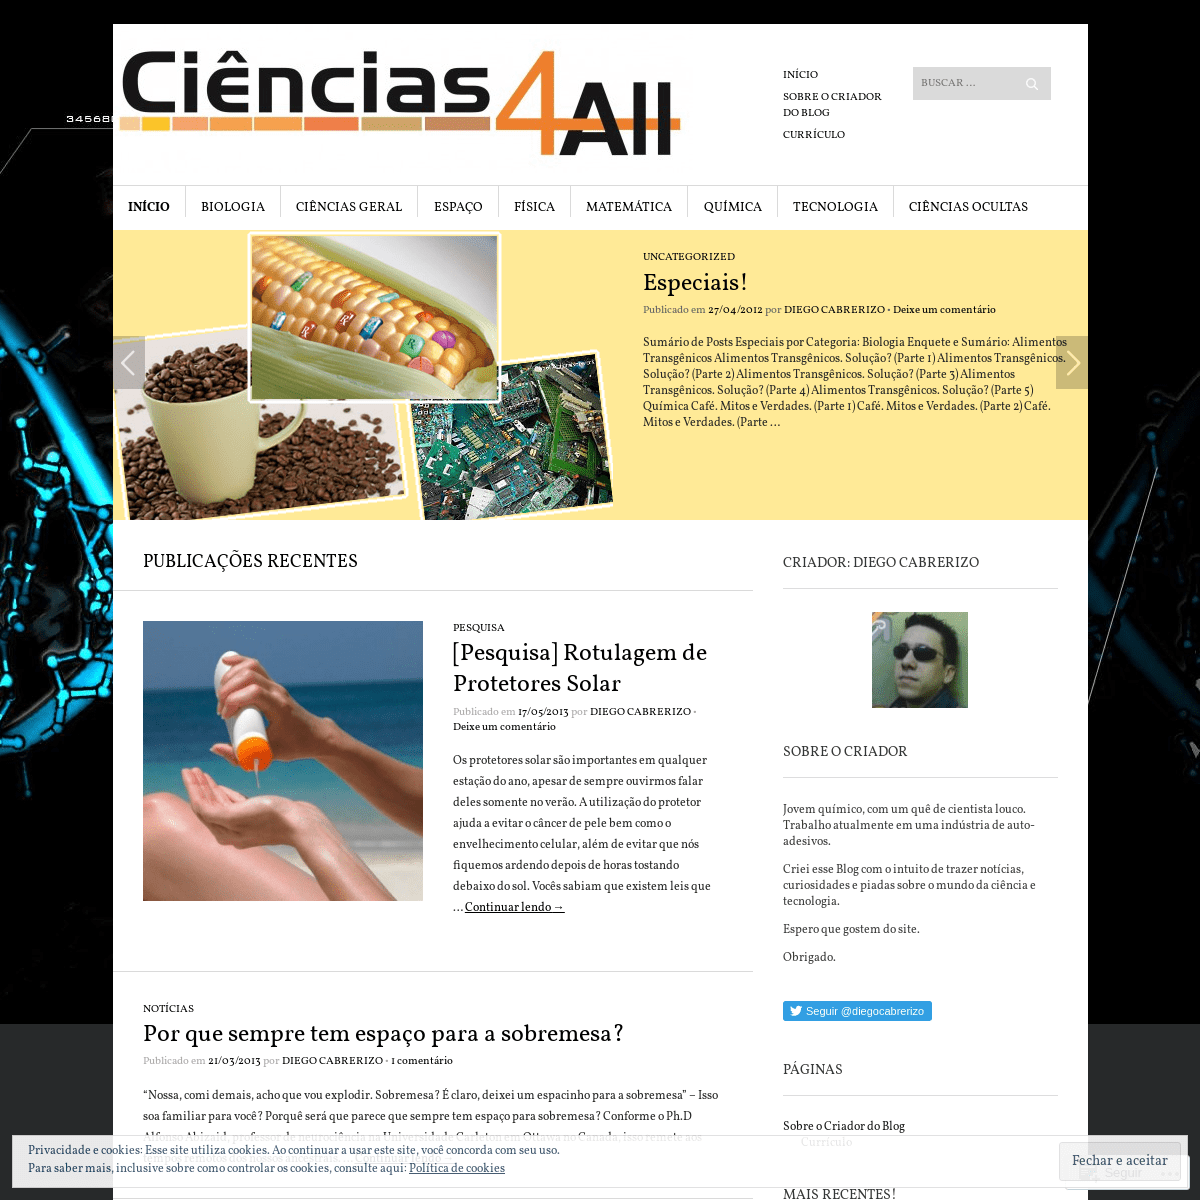 A complete backup of ciencias4all.wordpress.com